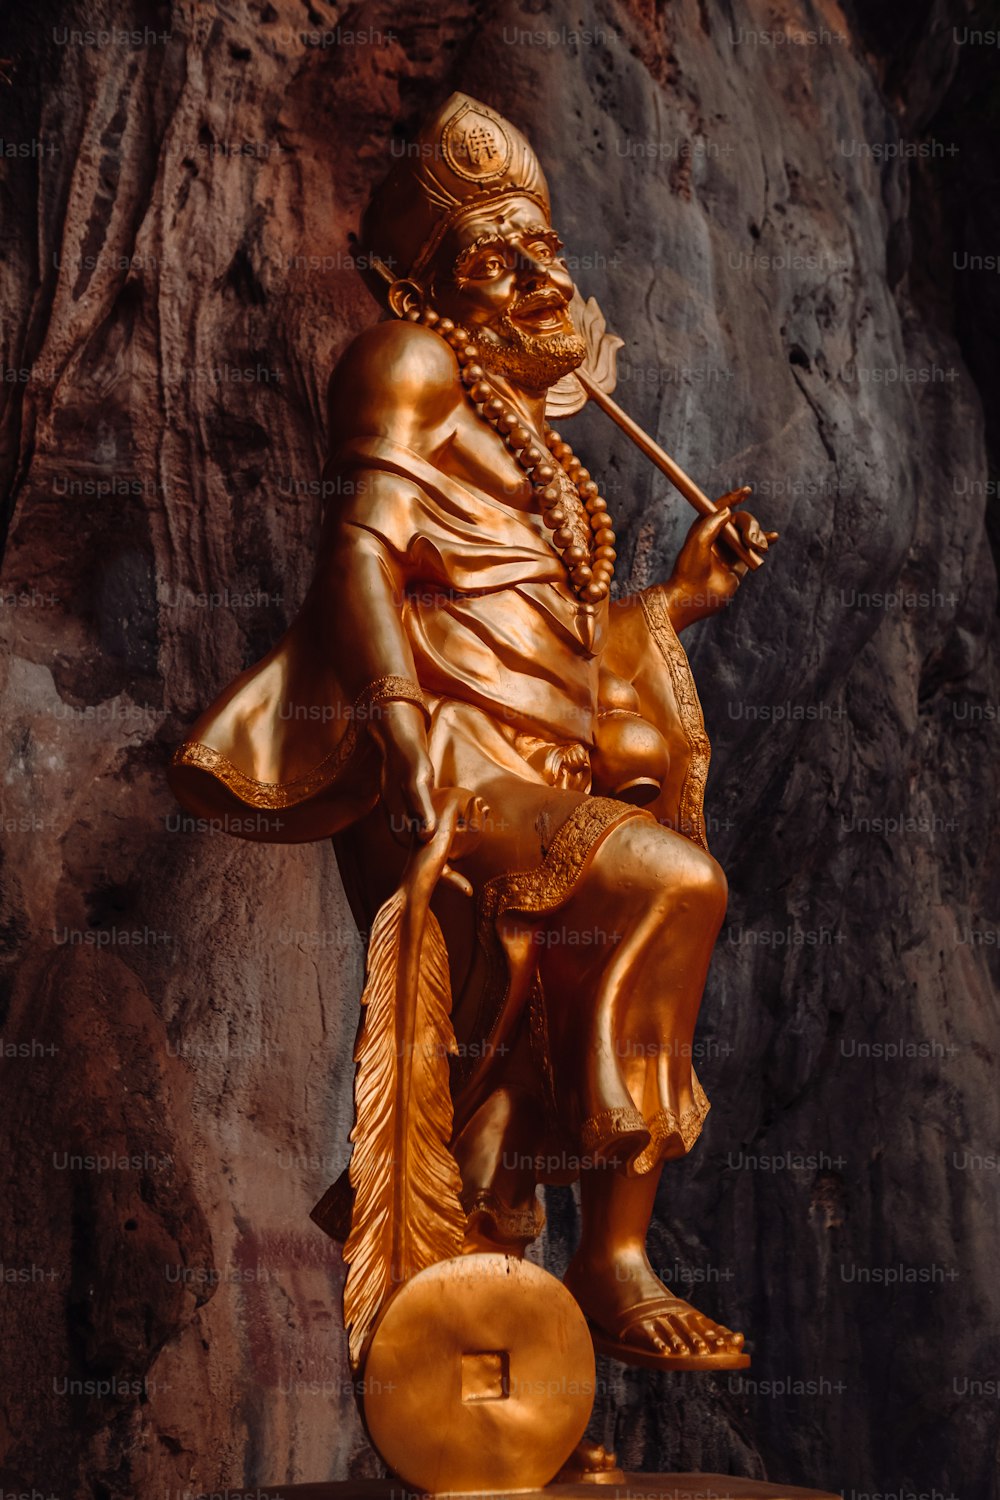 Una estatua de un hombre con una pipa en la mano